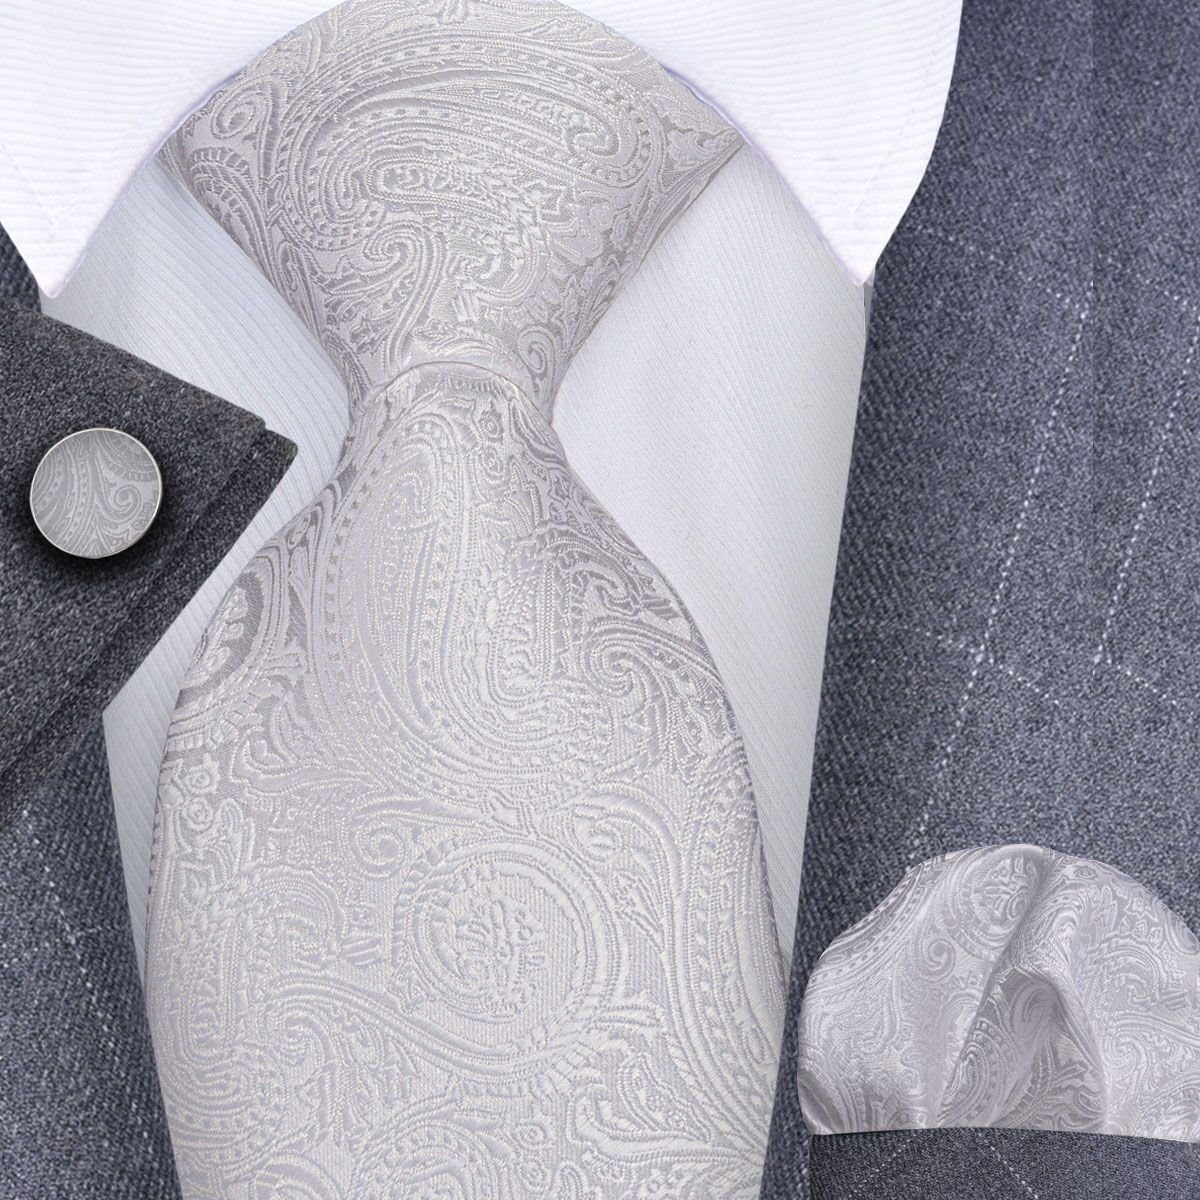 Krawatte Manschettenknöpfe Seide + Krawatte Herrenkrawatte Seidenkrawatte Krawatten-Set Ivory Krawatte + Trachtenkrawatte Einstecktuch Moschen-Bayern -